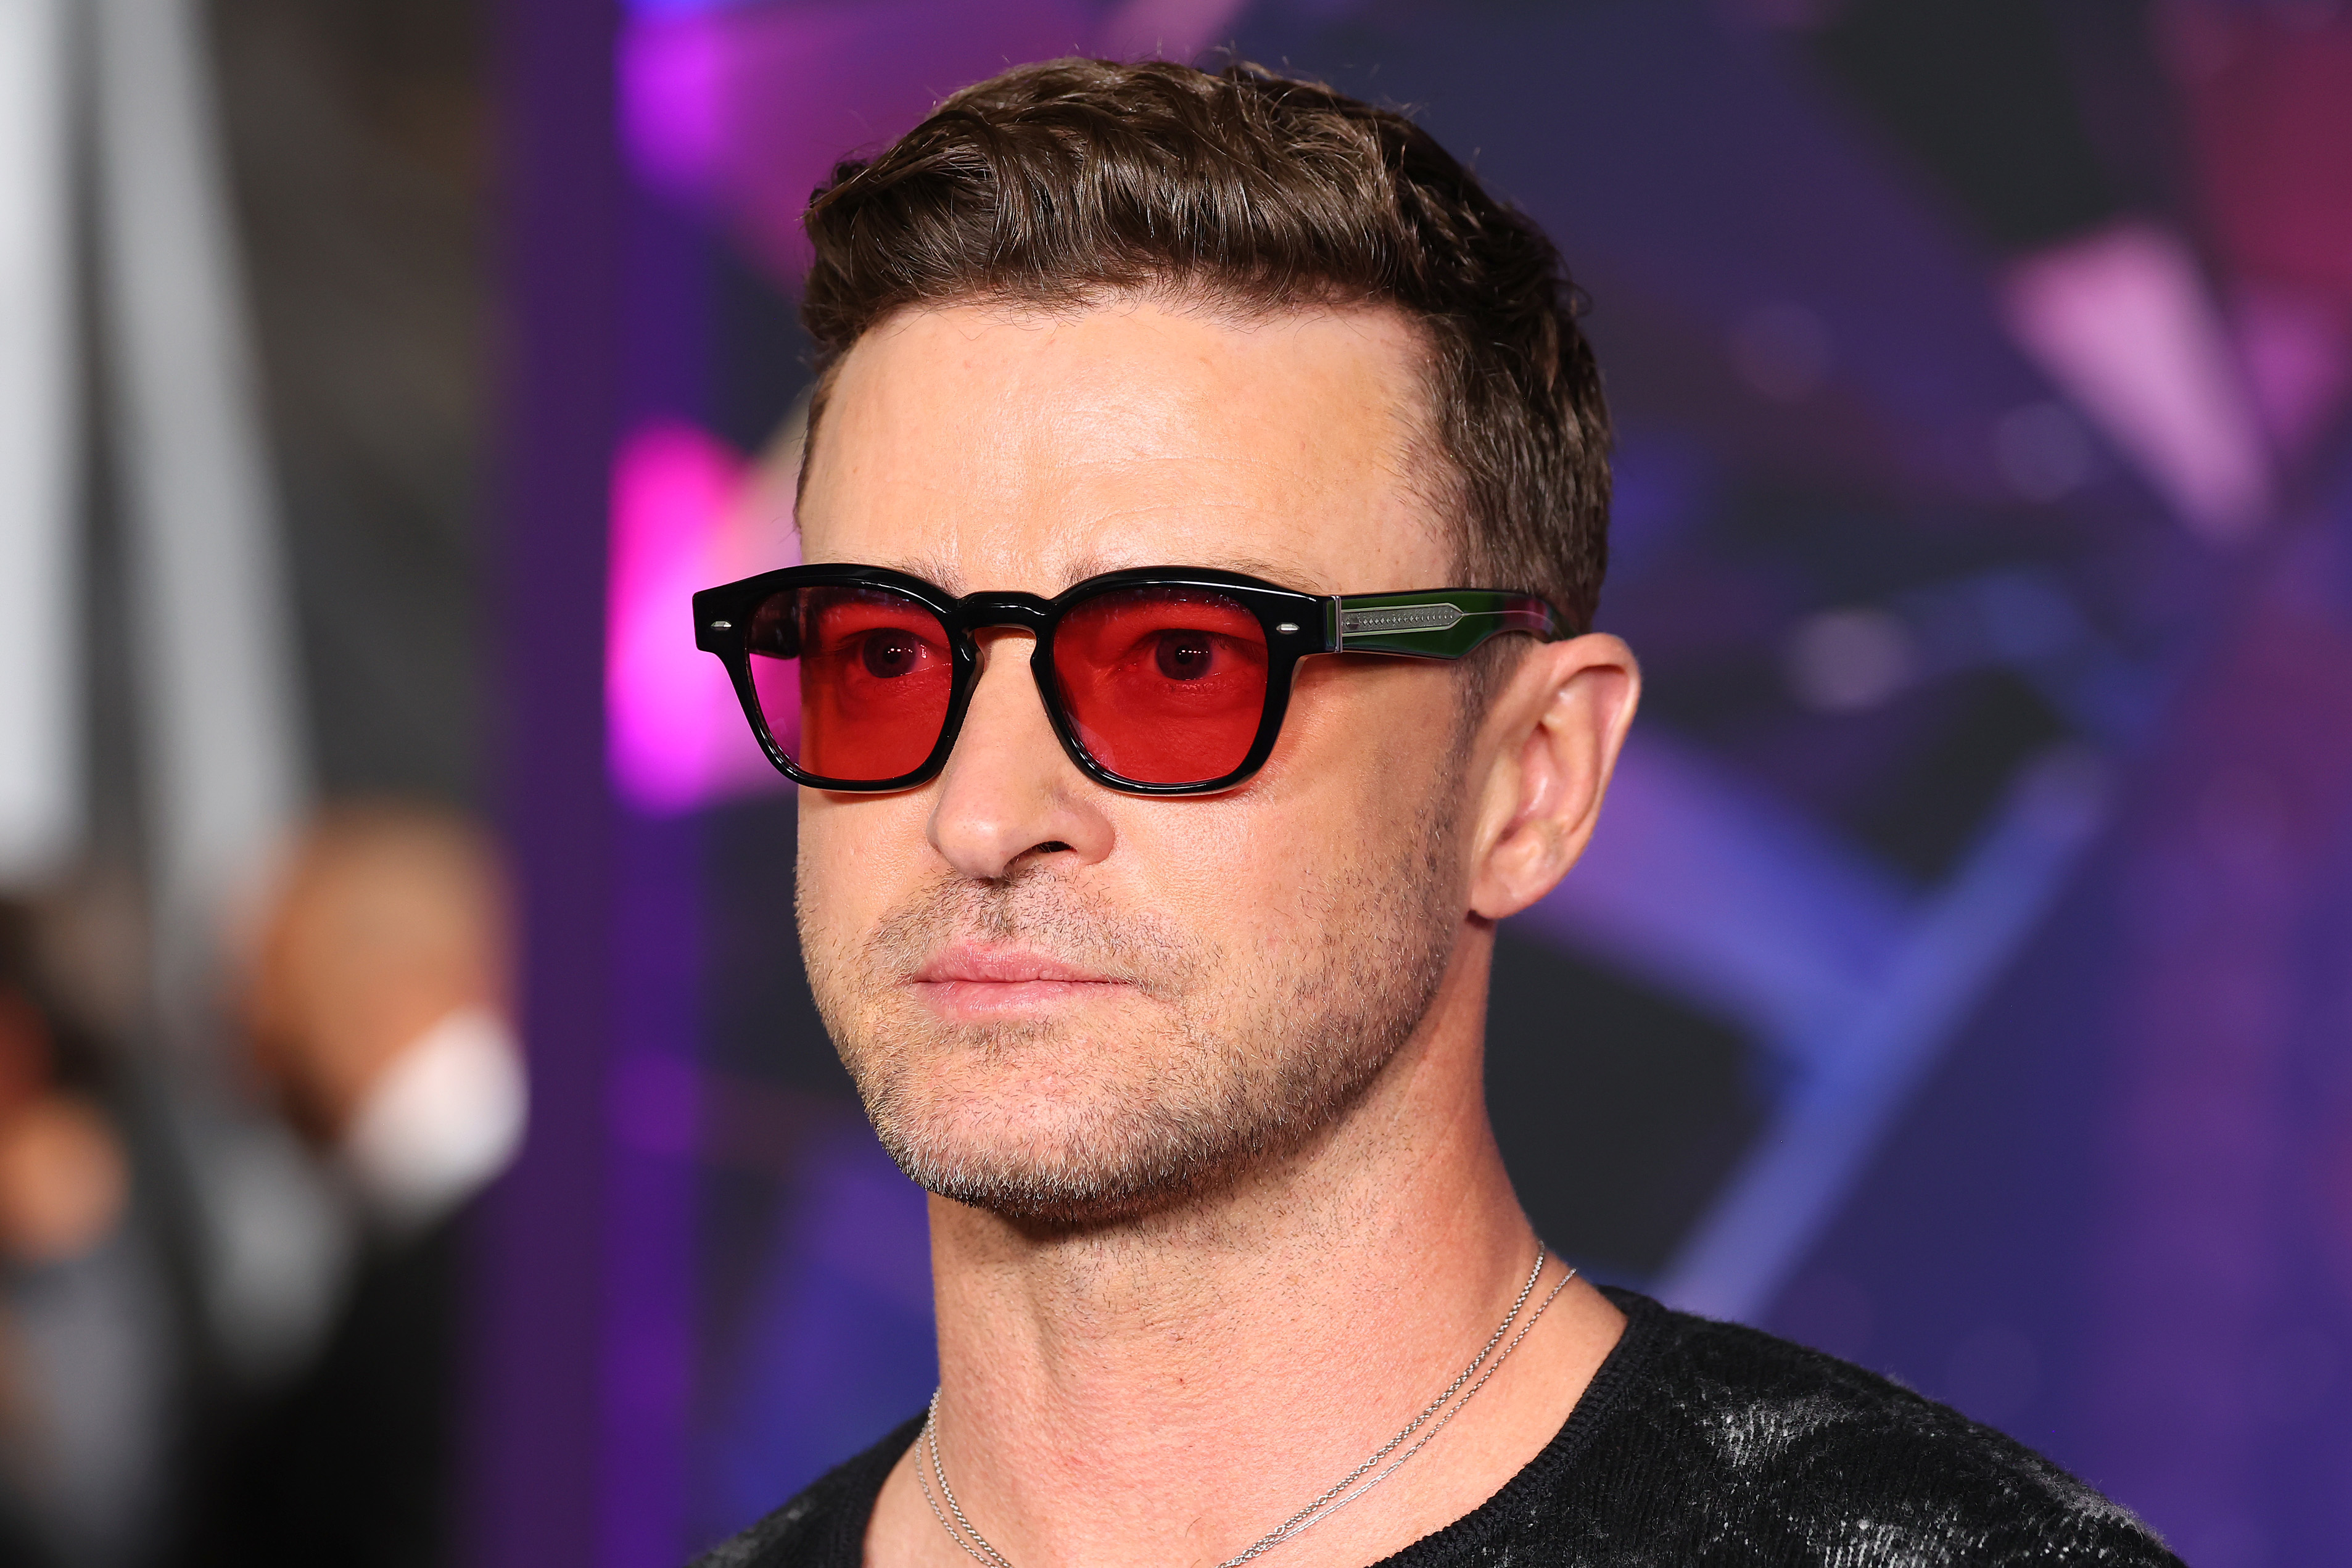 A closeup of Justin timberlake wearing sunglasses